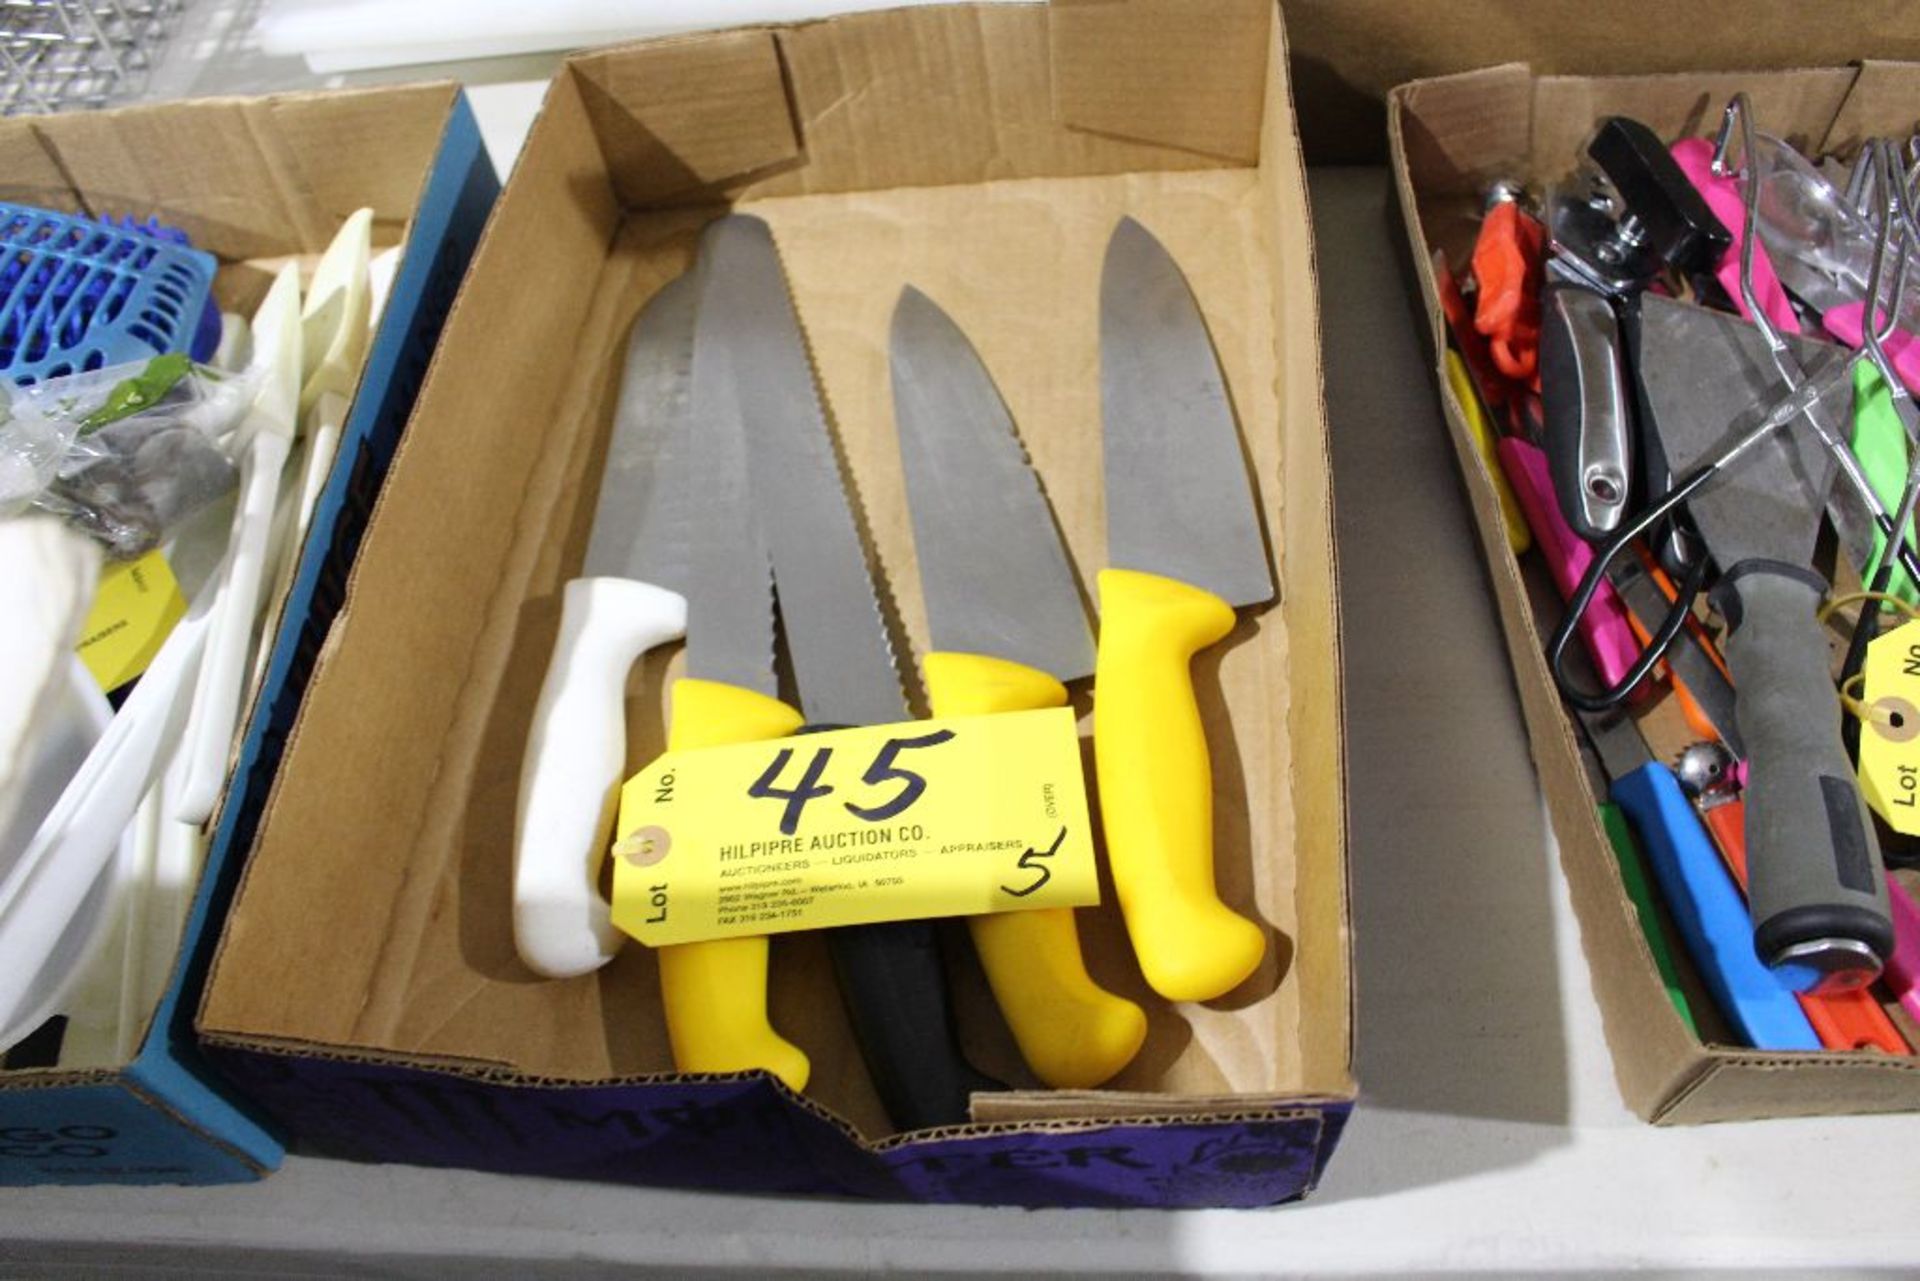 (5) Prep knives.